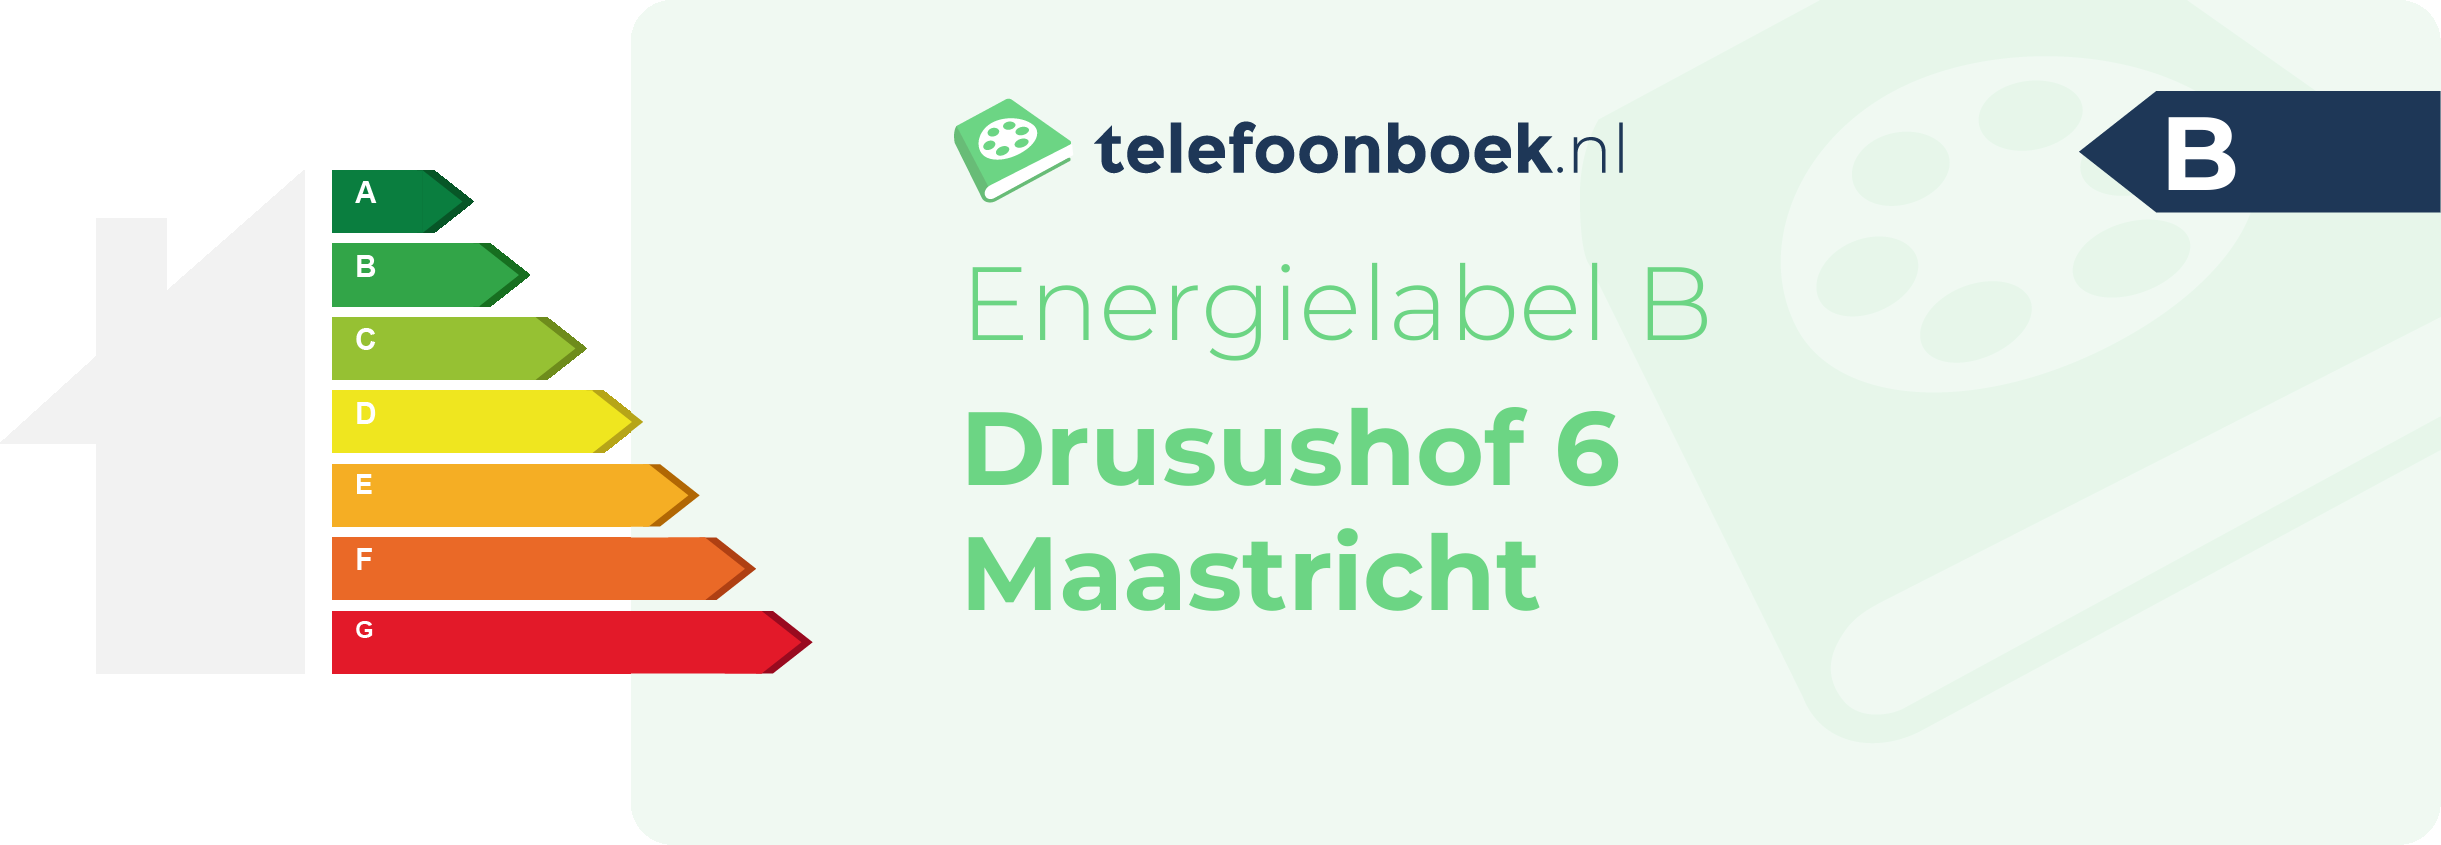 Energielabel Drusushof 6 Maastricht